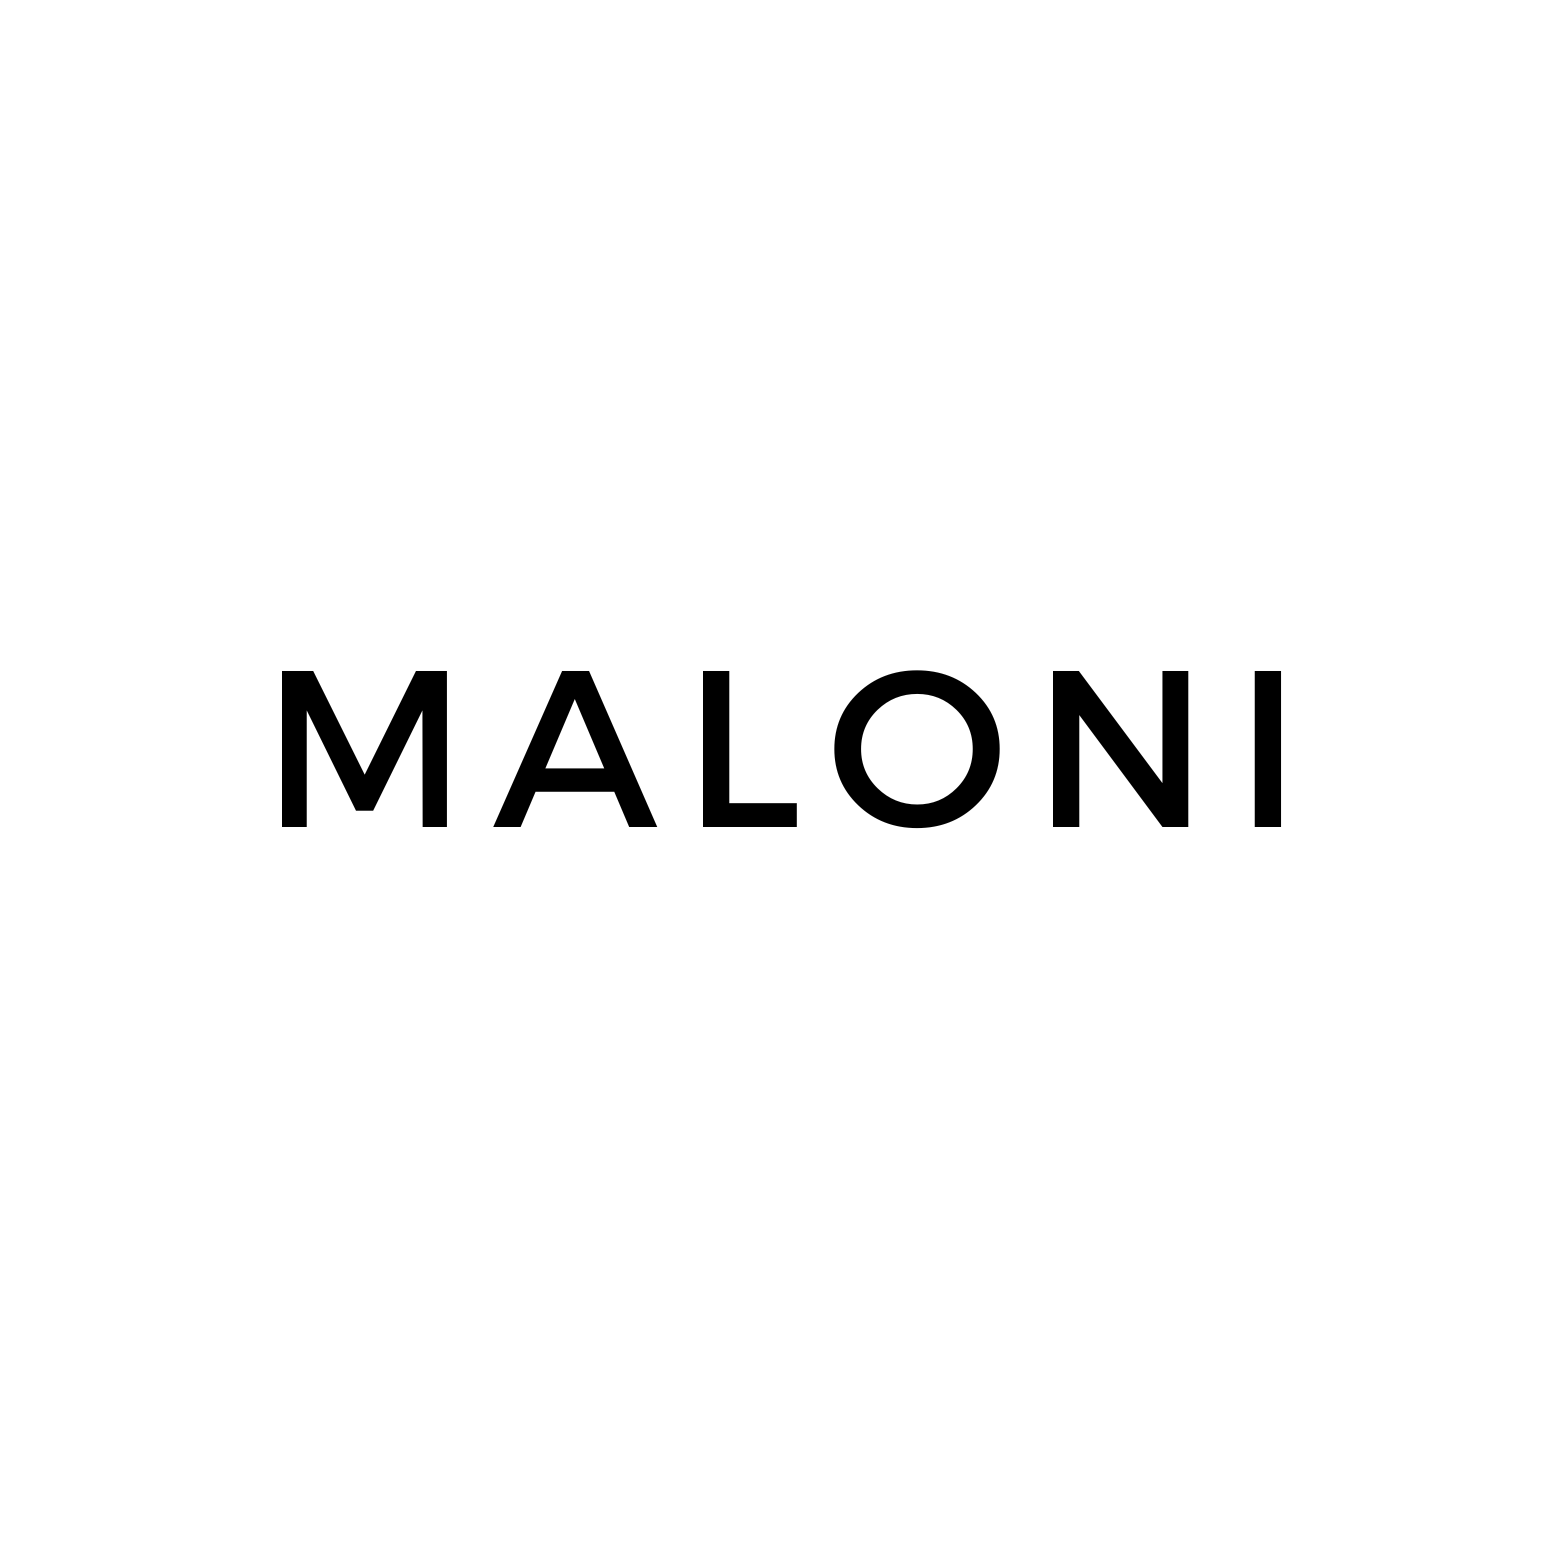 Maloni - Multibrandstore – Maloni Multibrandstore